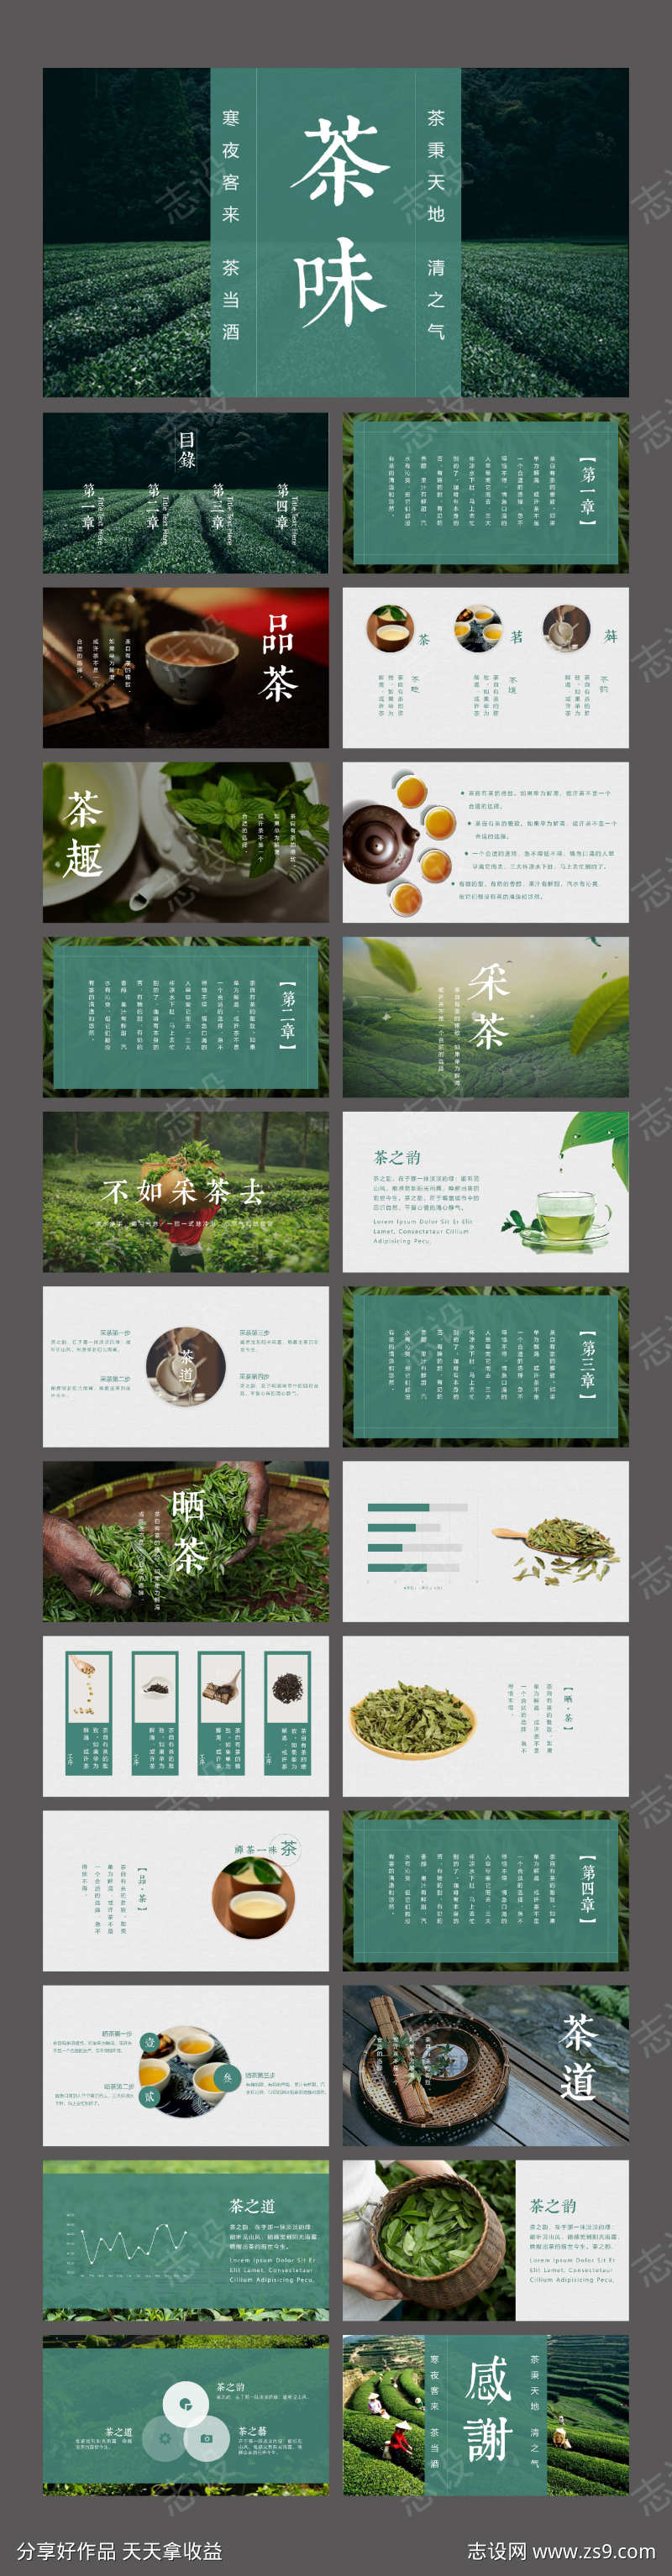 茶叶文化绿色中国风画册PPT